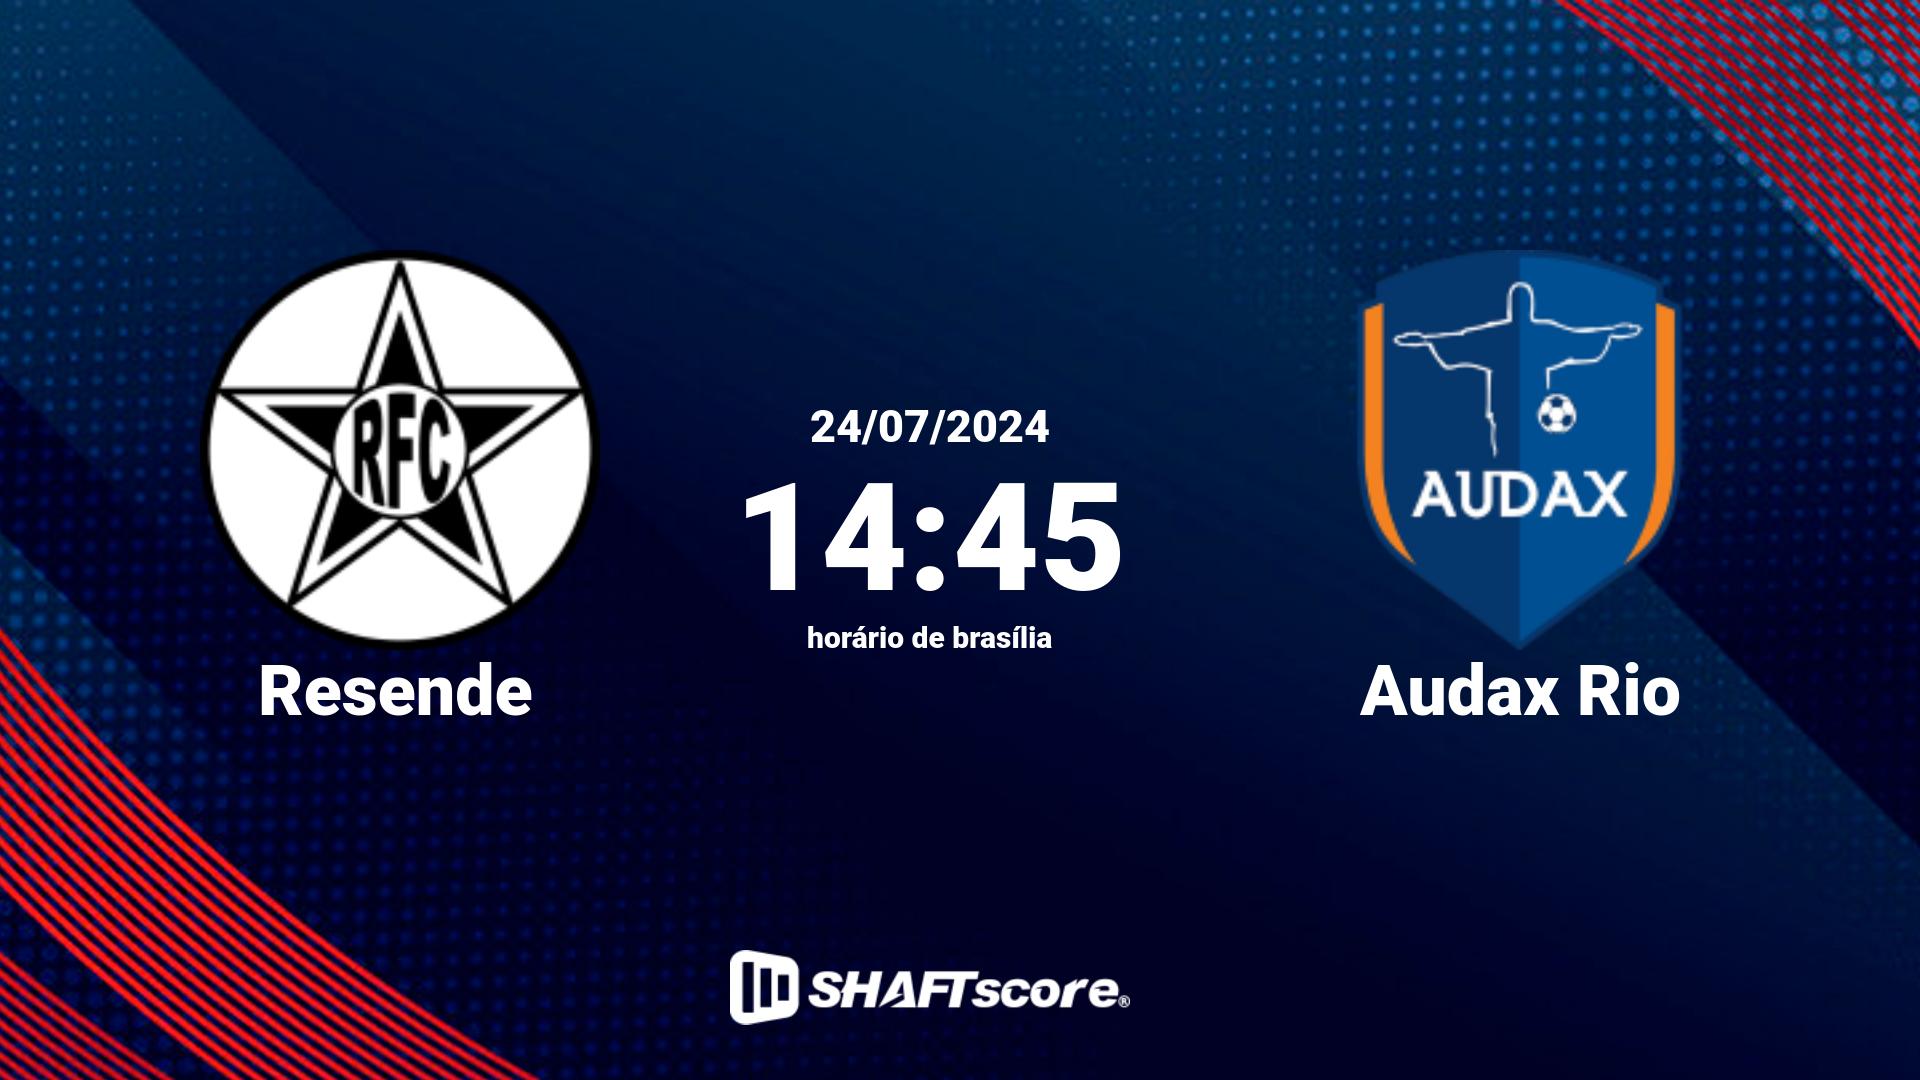 Estatísticas do jogo Resende vs Audax Rio 24.07 14:45